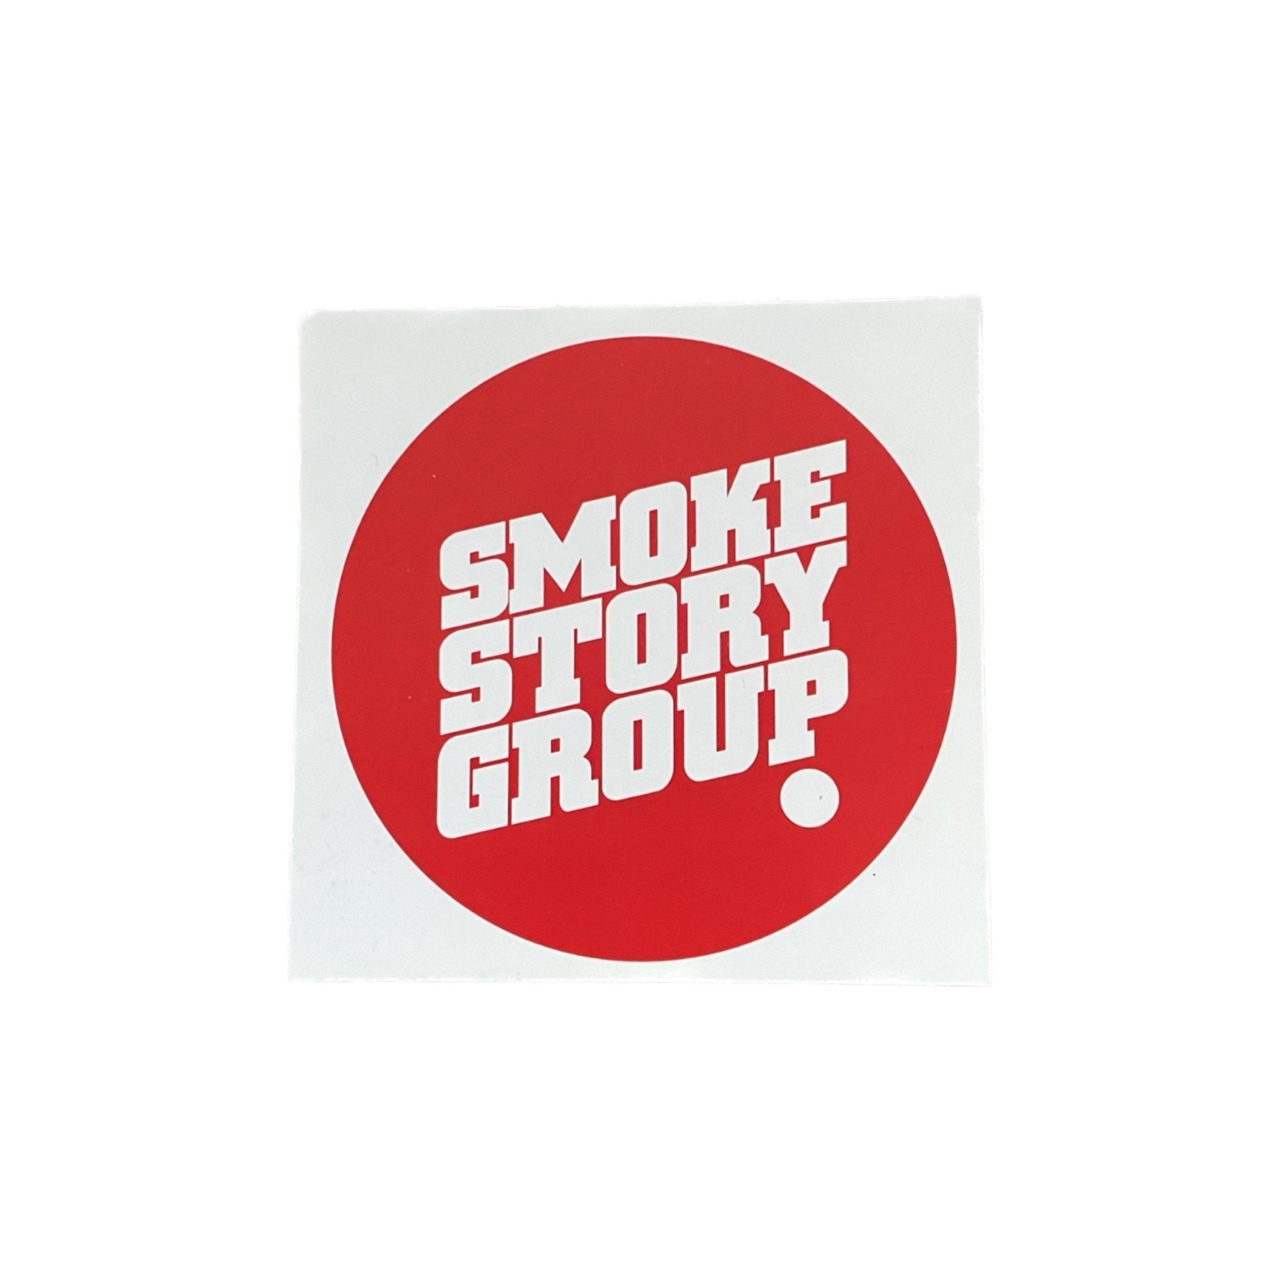 Zdjęcie oferty: Naklejka wlepka SmokeStoryGroup SSG